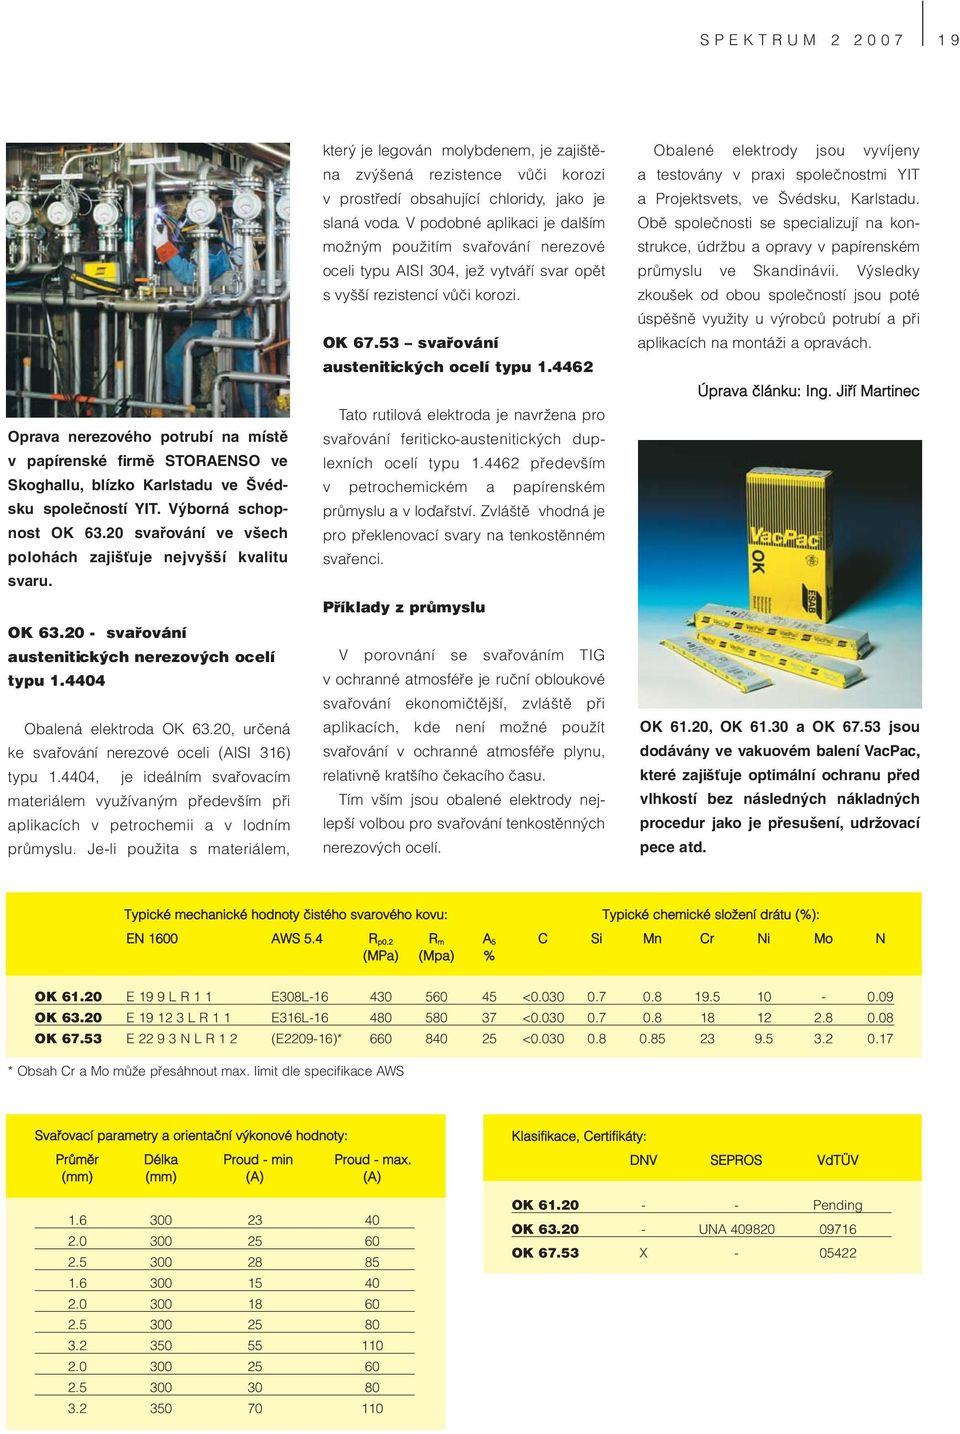 20, určená ke svařování nerezové oceli (AISI 316) typu 1.4404, je ideálním svařovacím materiálem využívaným především při aplikacích v petrochemii a v lodním průmyslu.